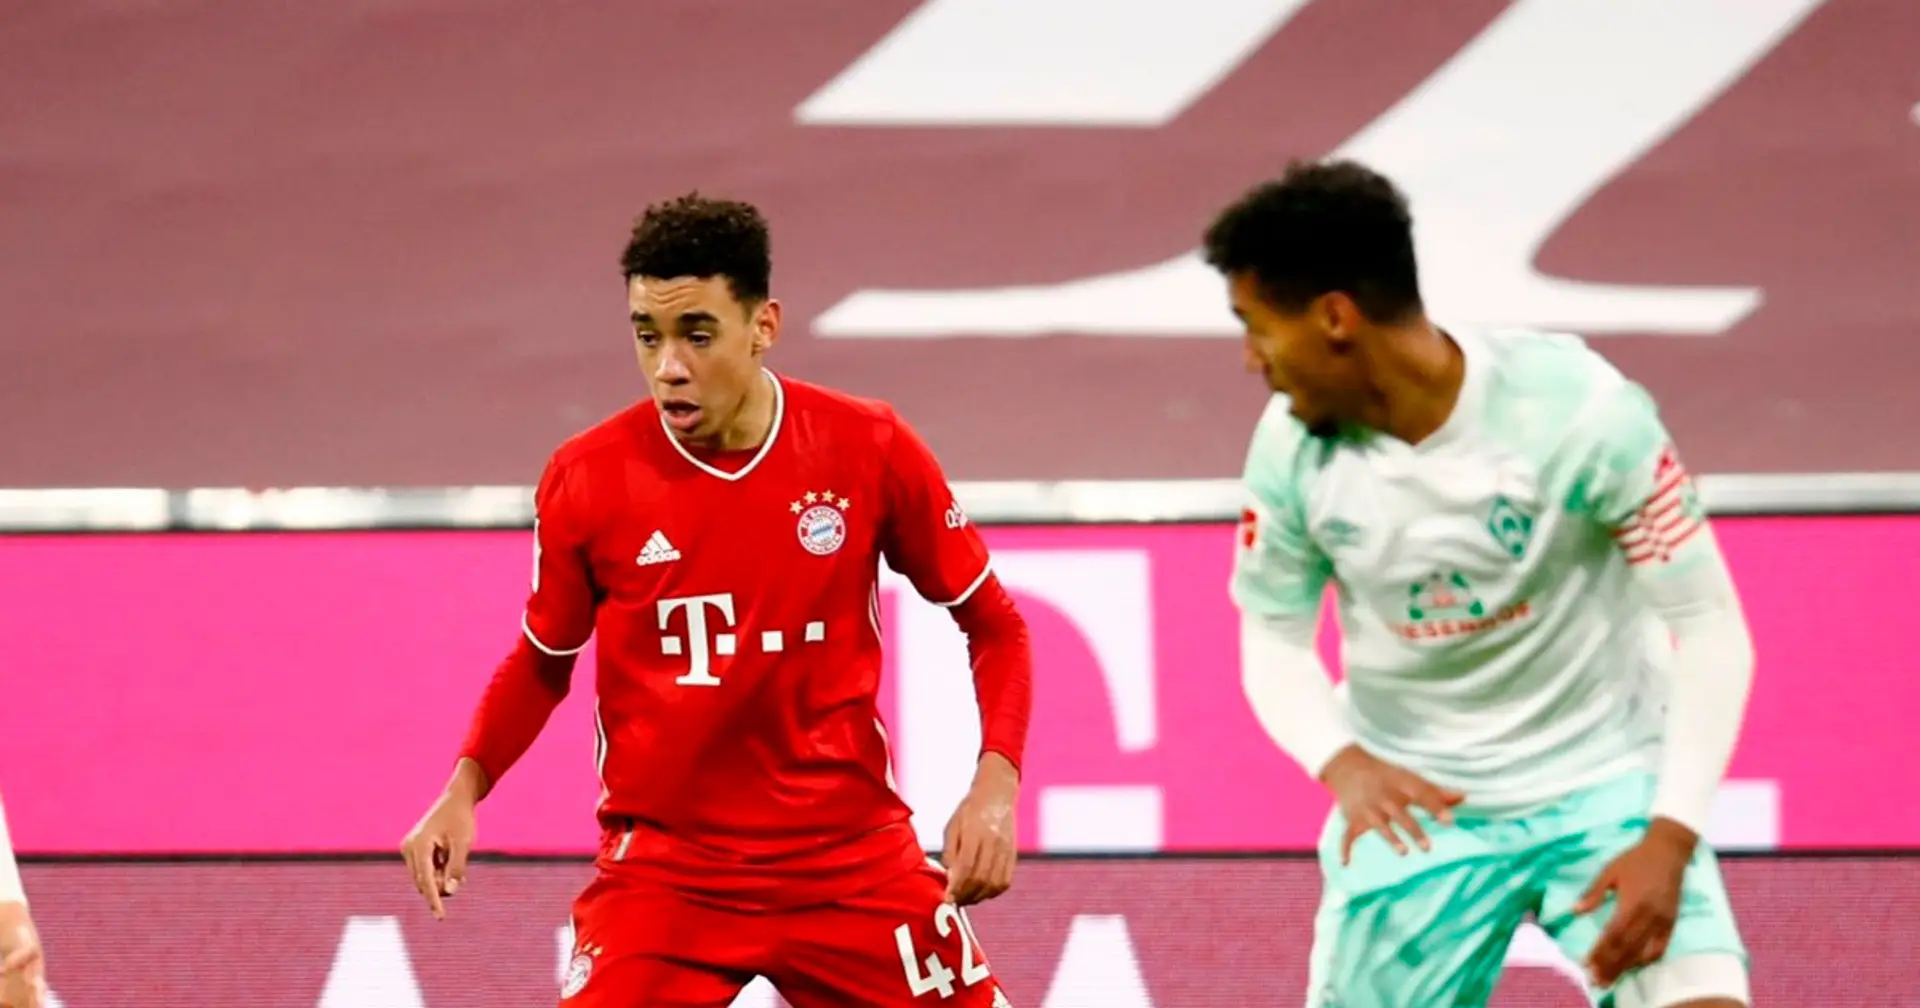 Erste Punkte seit 10 Jahren, Bayern ist zahnlos: Remis gegen Bremen in 5 Kernpunkten